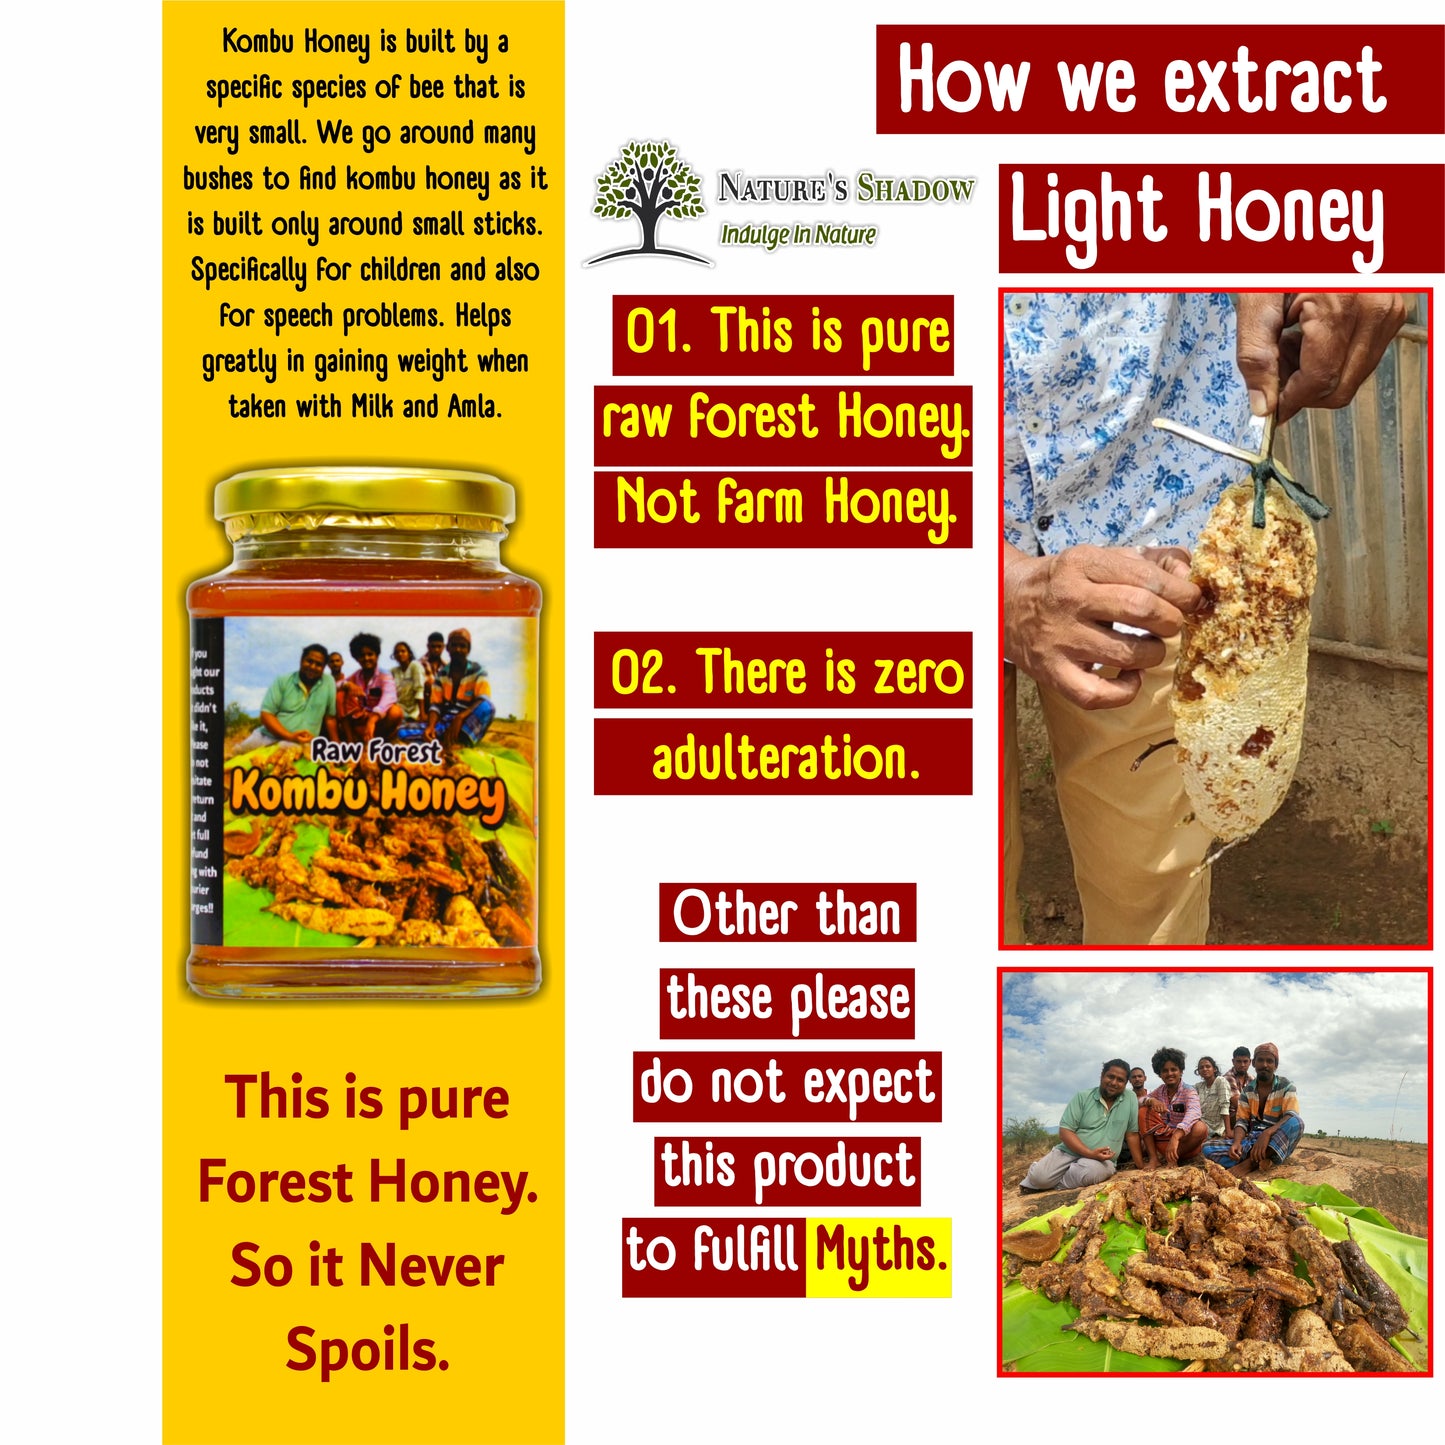 Raw Forest Kombu Thaen - Kombu Honey